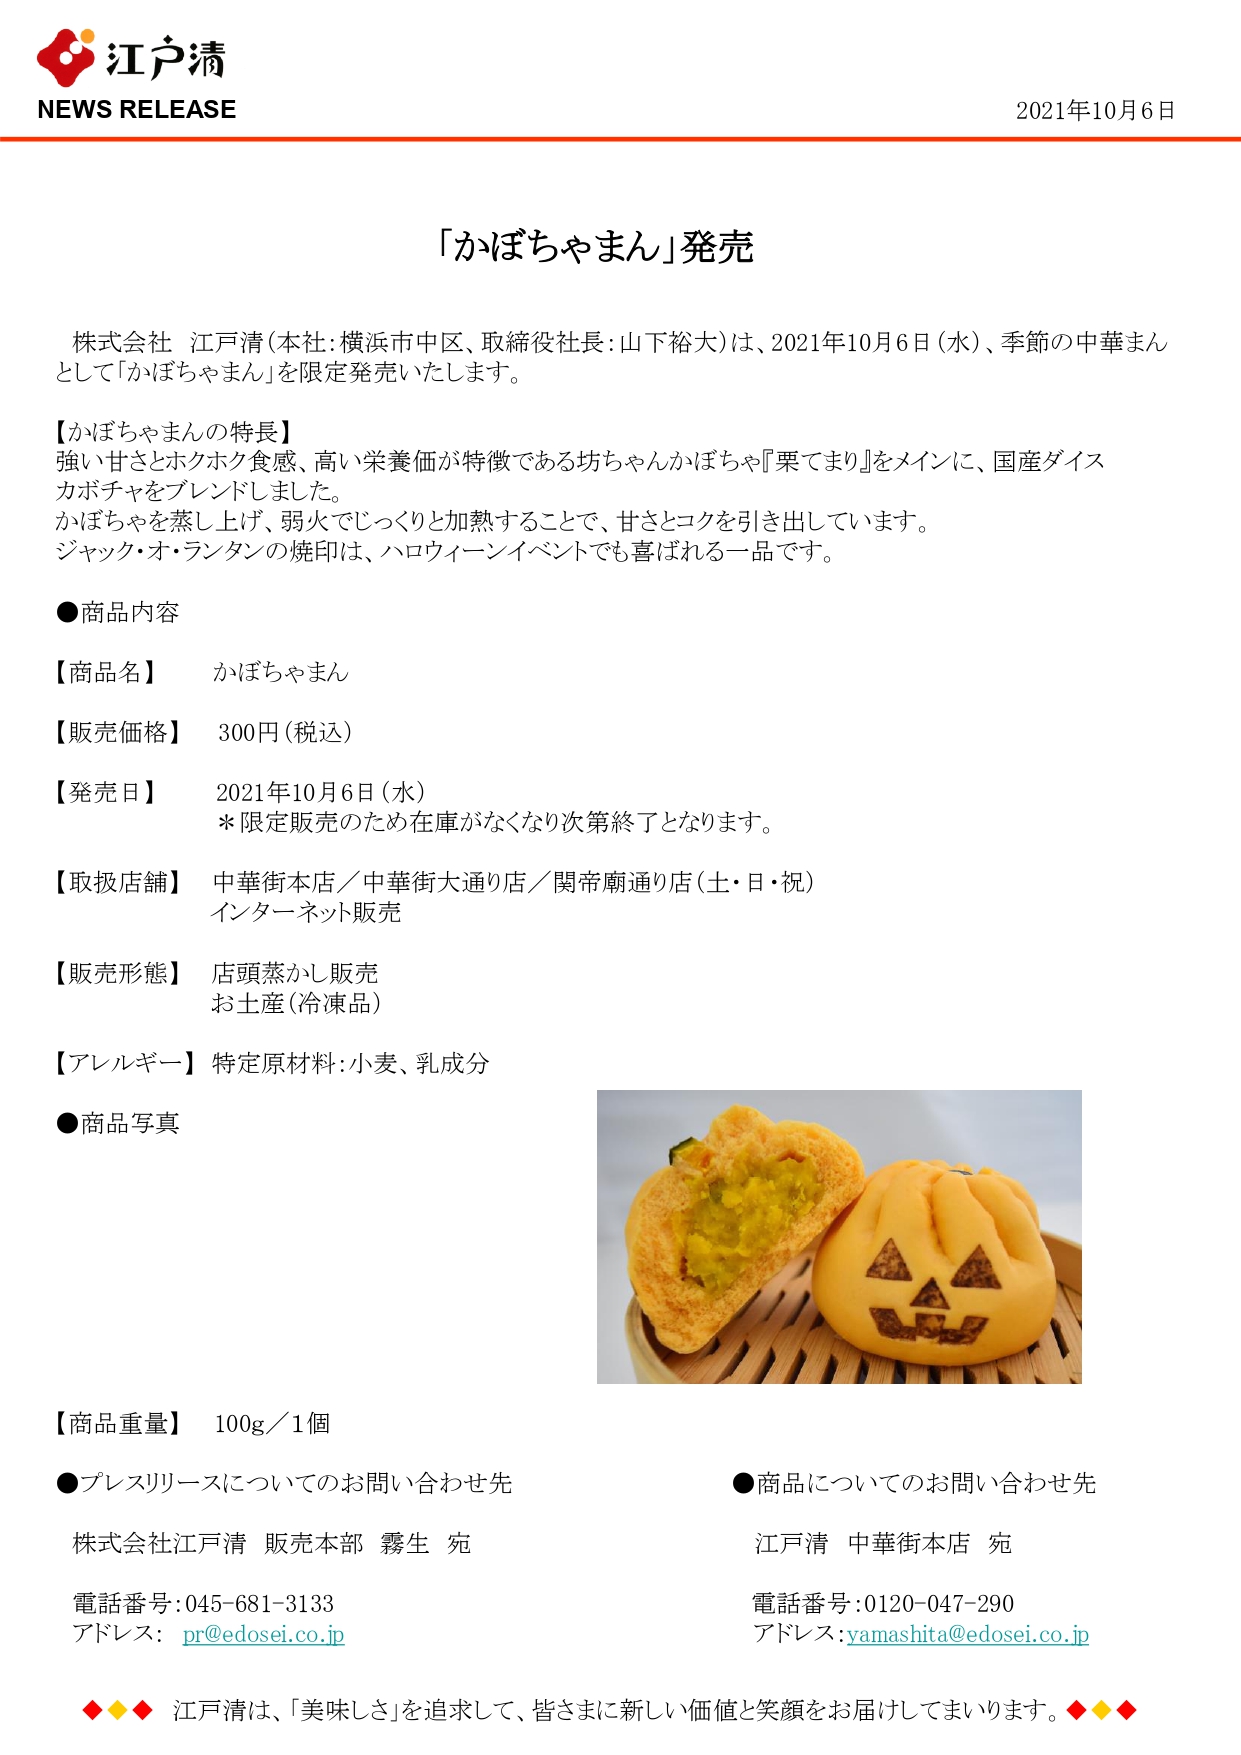 かぼちゃまん 発売 公式 株式会社江戸清コーポレイトサイト